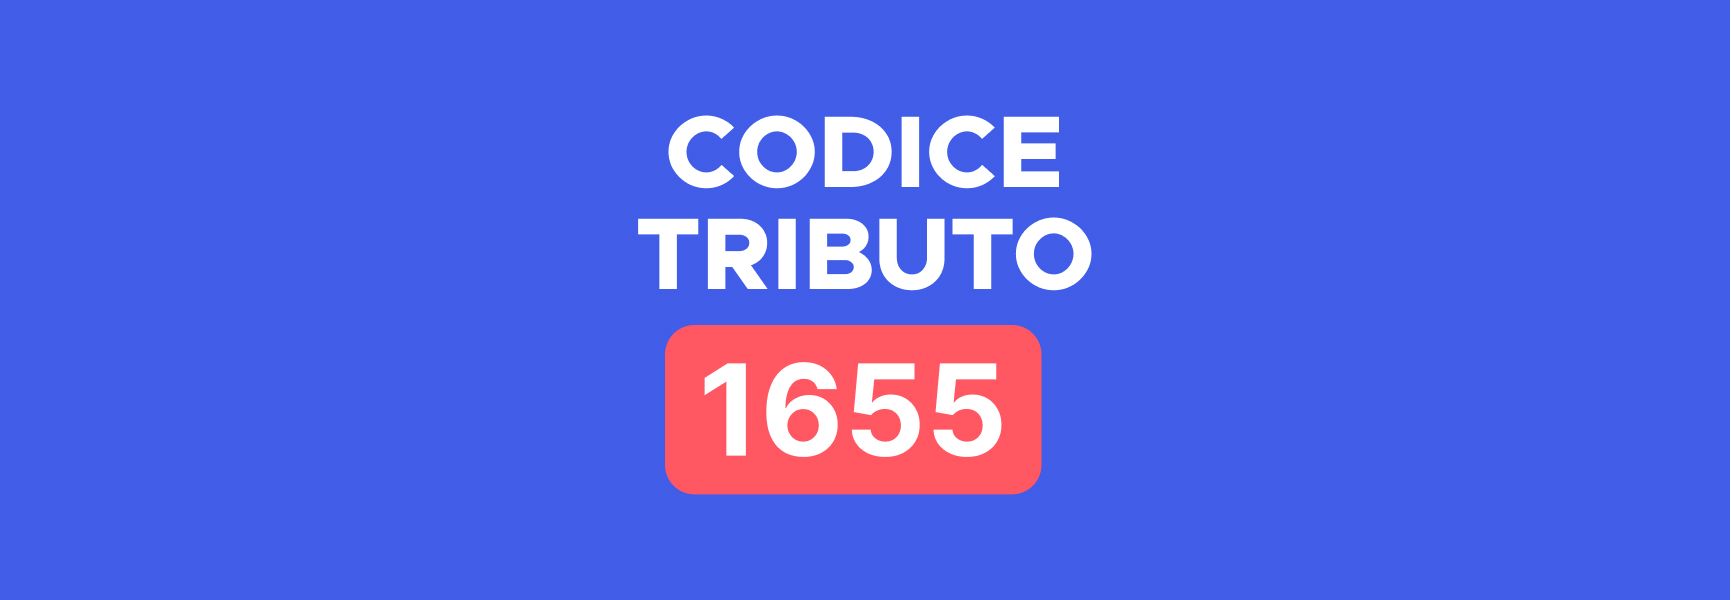 Codice tributo 1655